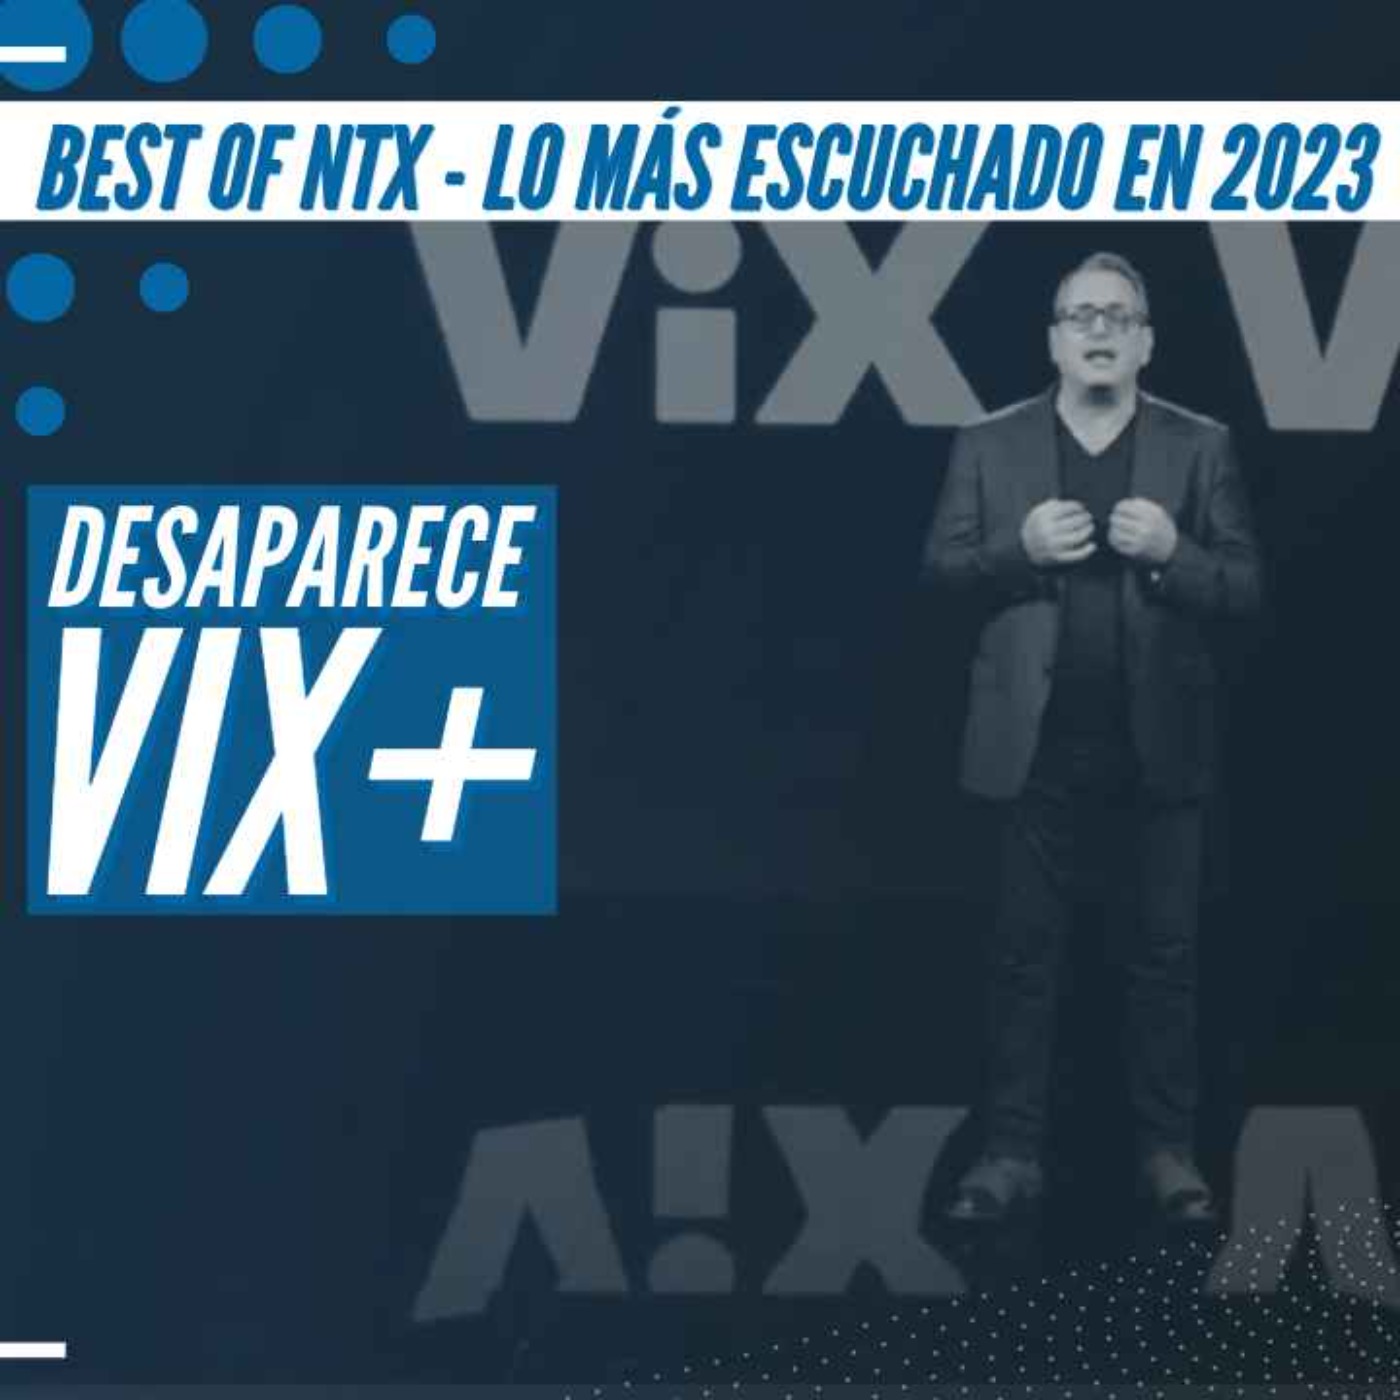 Best of NTX 2023 - ViX+ ha muerto, que Viva ViX